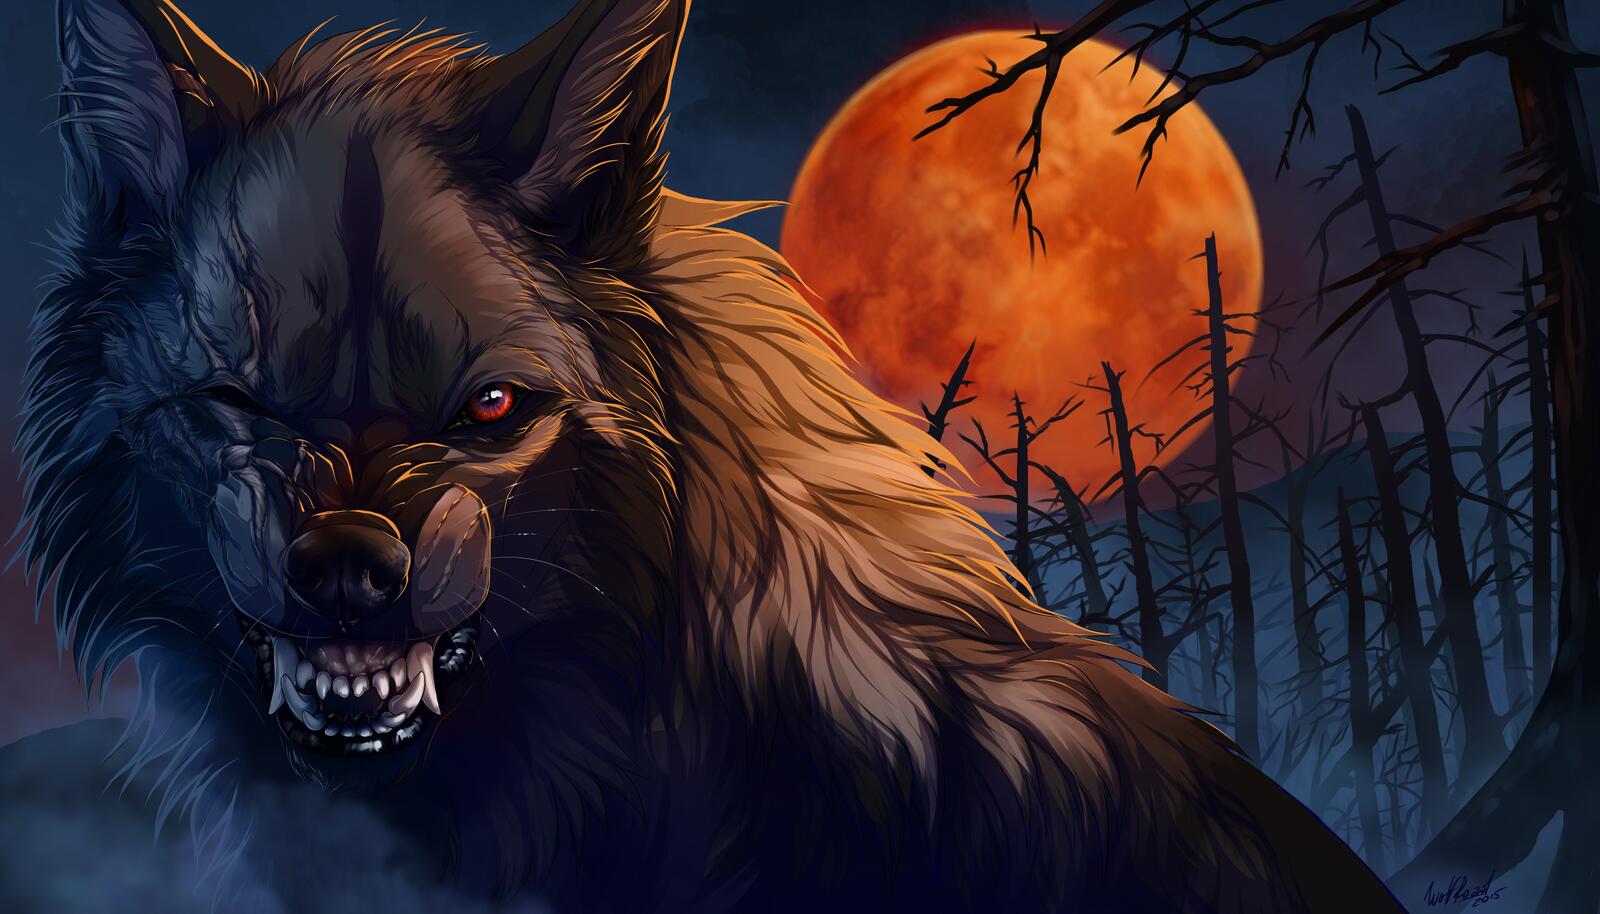 免费照片一轮红月下的狼影。